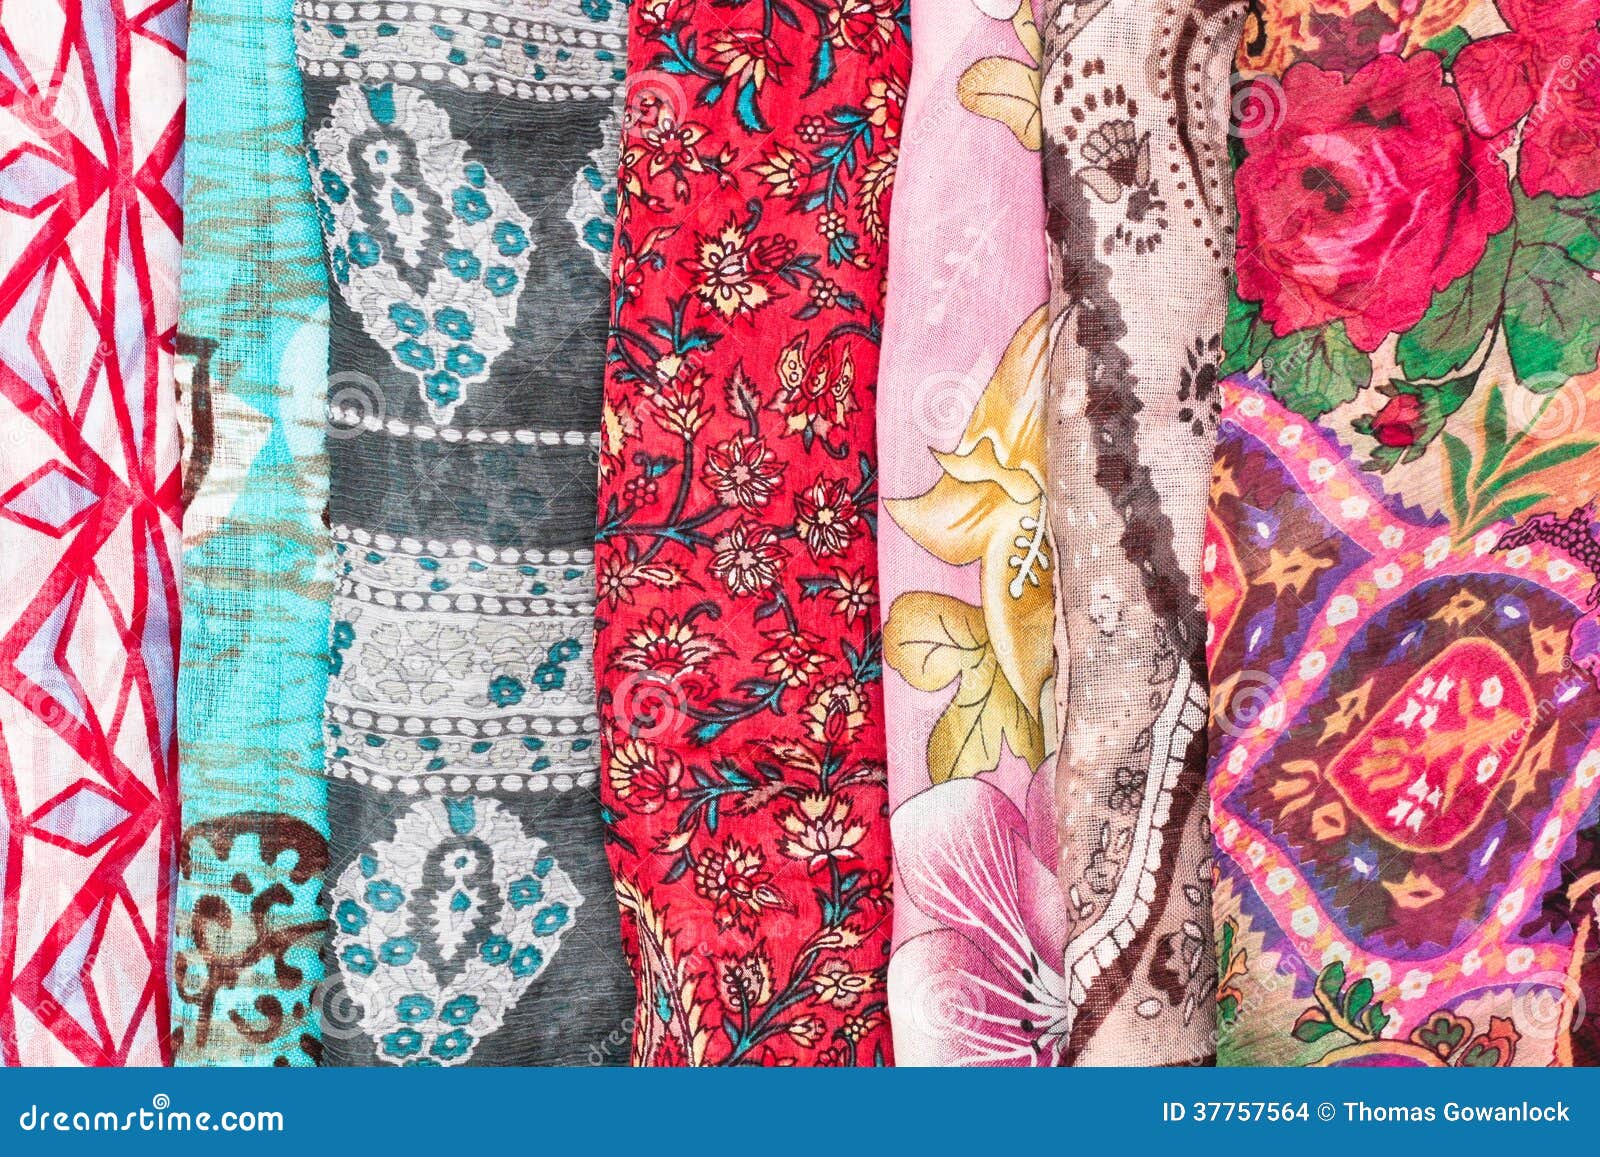 Colorful scarves stock photo. Image of feminine, female - 37757564